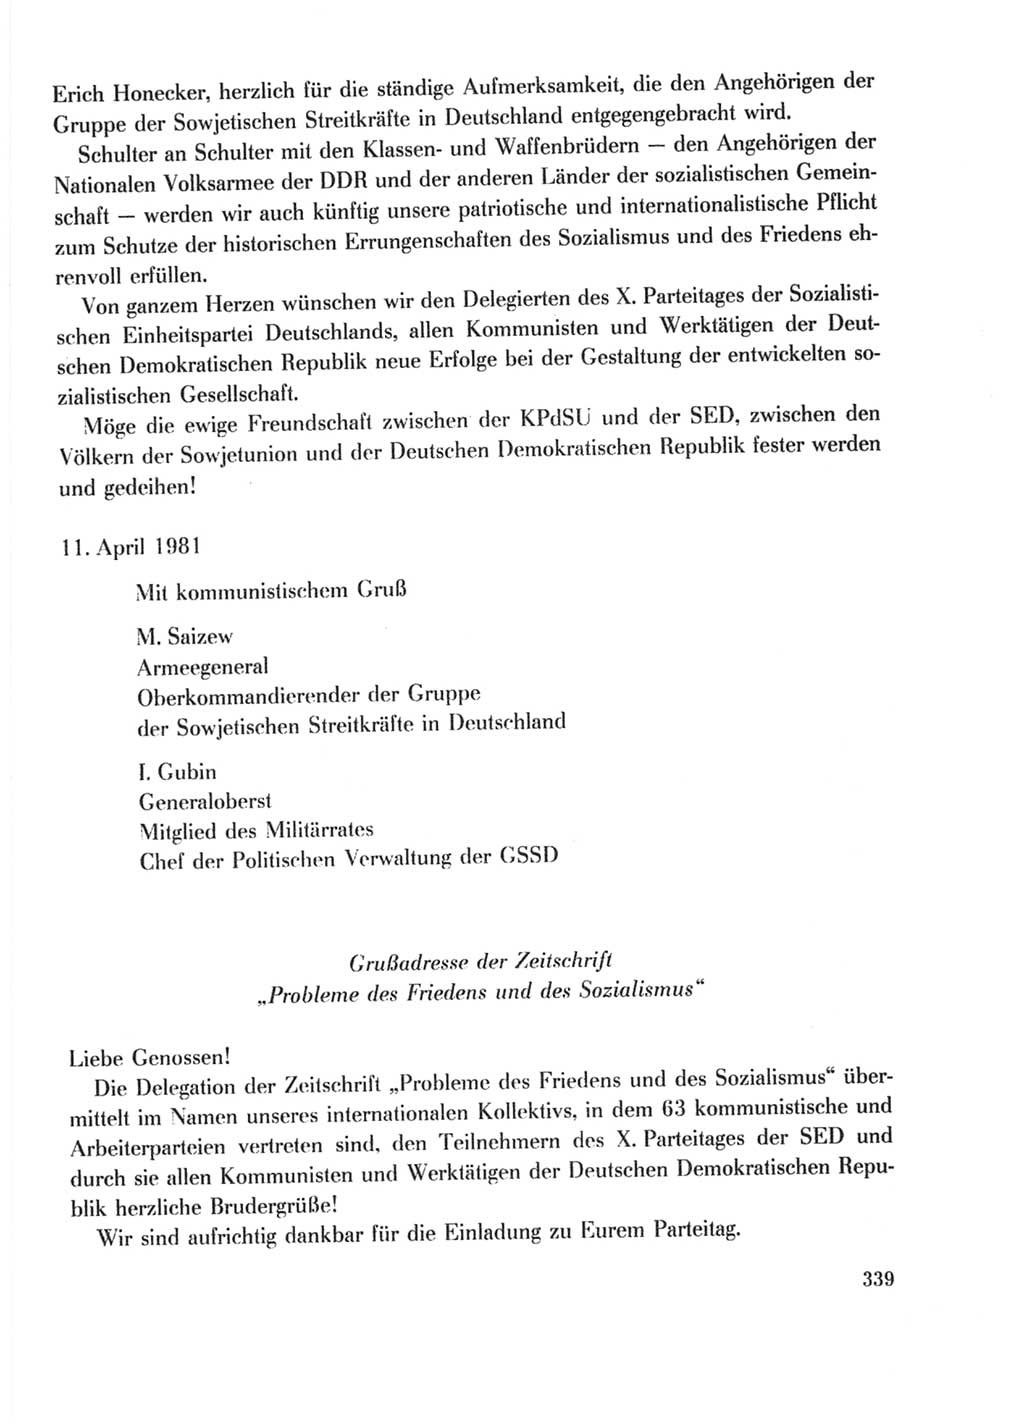 Protokoll der Verhandlungen des Ⅹ. Parteitages der Sozialistischen Einheitspartei Deutschlands (SED) [Deutsche Demokratische Republik (DDR)] 1981, Band 2, Seite 339 (Prot. Verh. Ⅹ. PT SED DDR 1981, Bd. 2, S. 339)